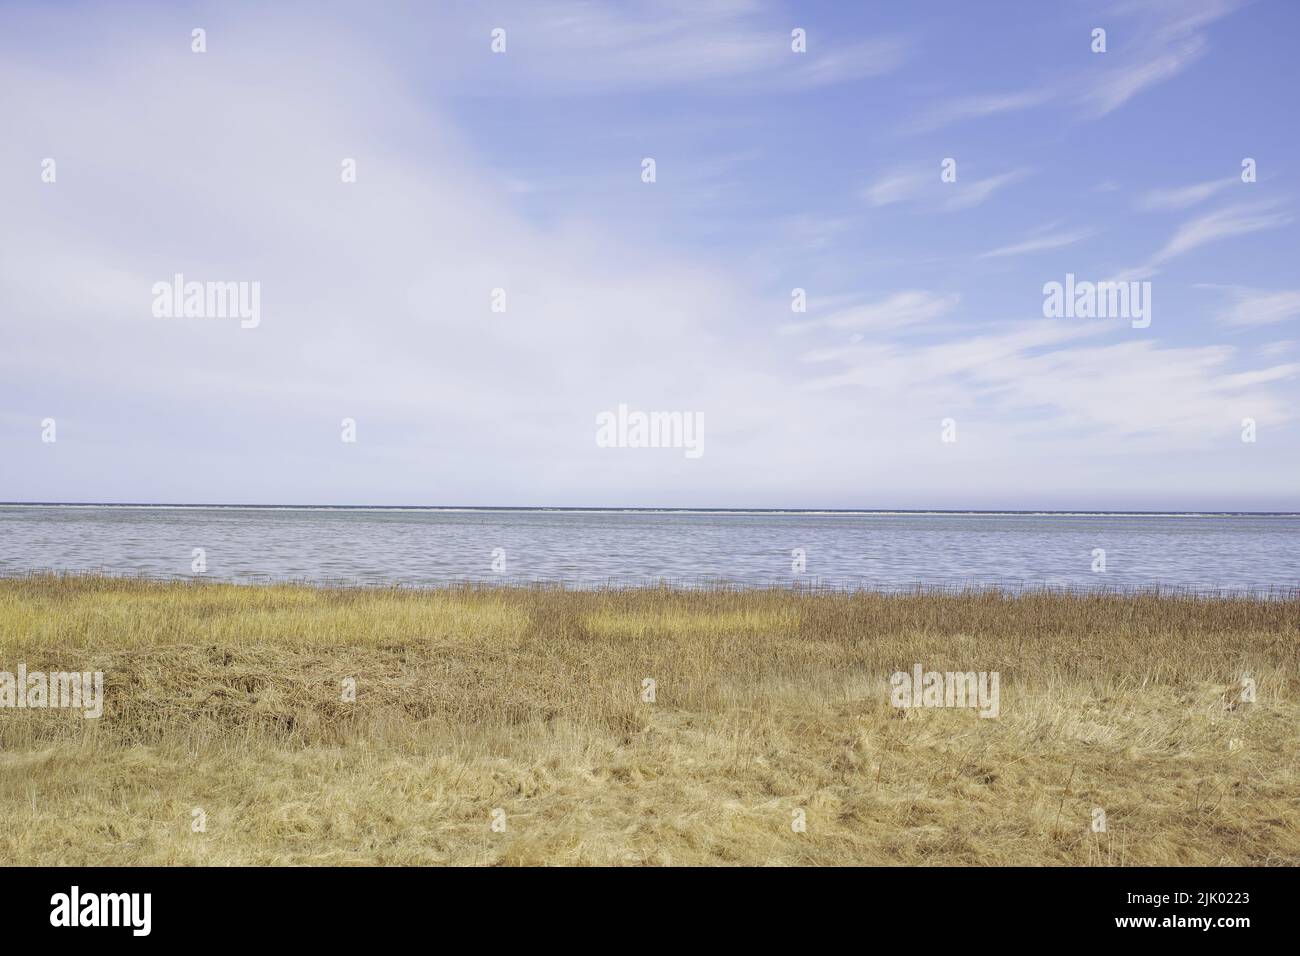 Landschaft aus Meer, See oder Lagune vor einem Himmelshintergrund mit Kopierfläche. Golf mit Schilf und wildem Gras wächst an der leeren Küste Norwegens. Friedlich Stockfoto